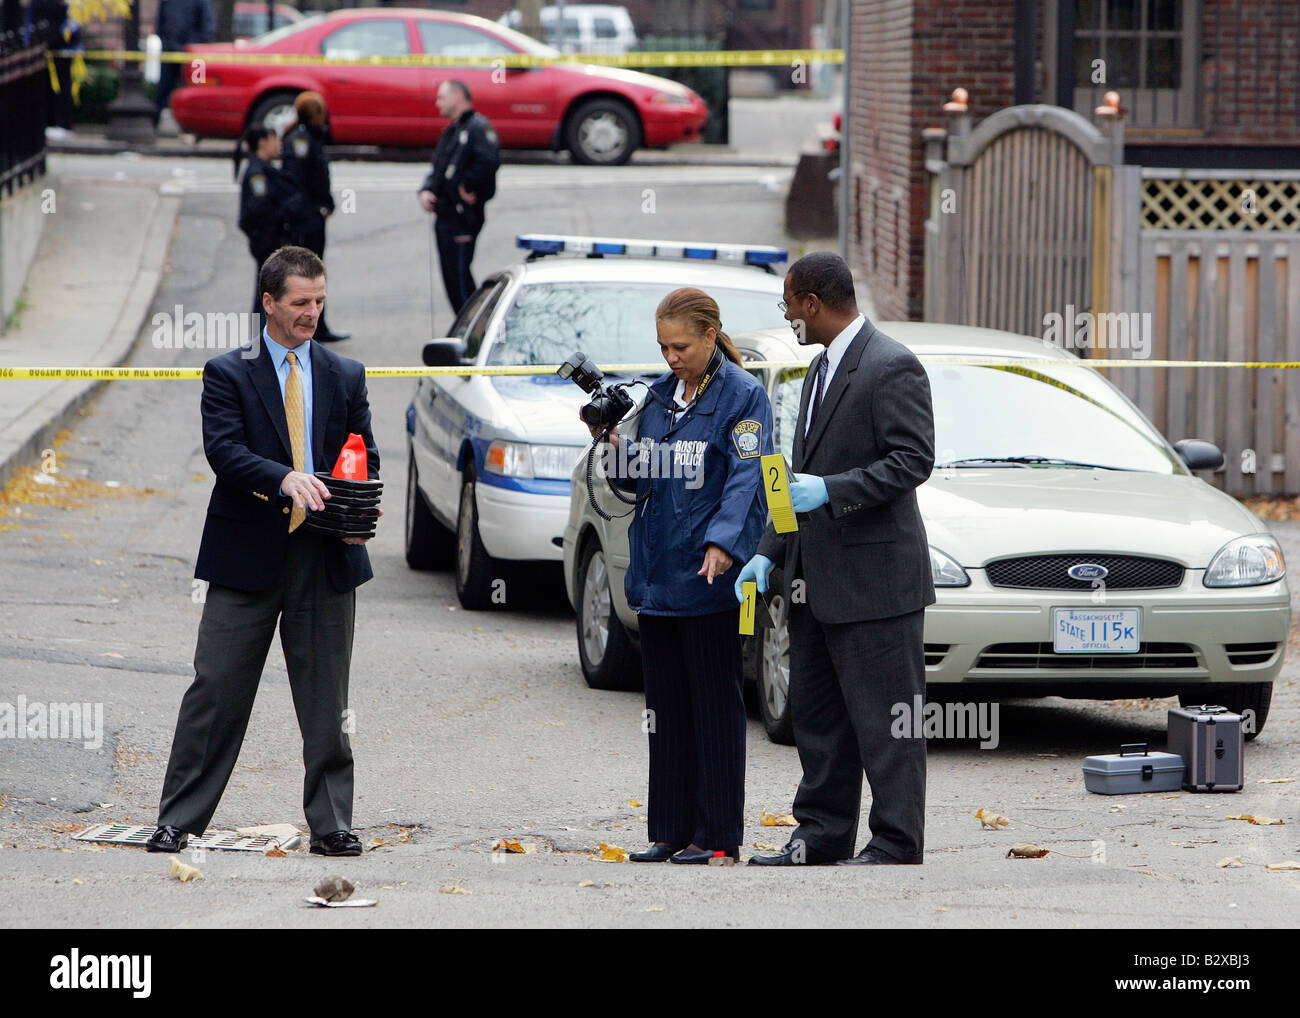 La police enquête sur un meurtre sur une scène de crime city Street, Boston, Massahcusetts Banque D'Images